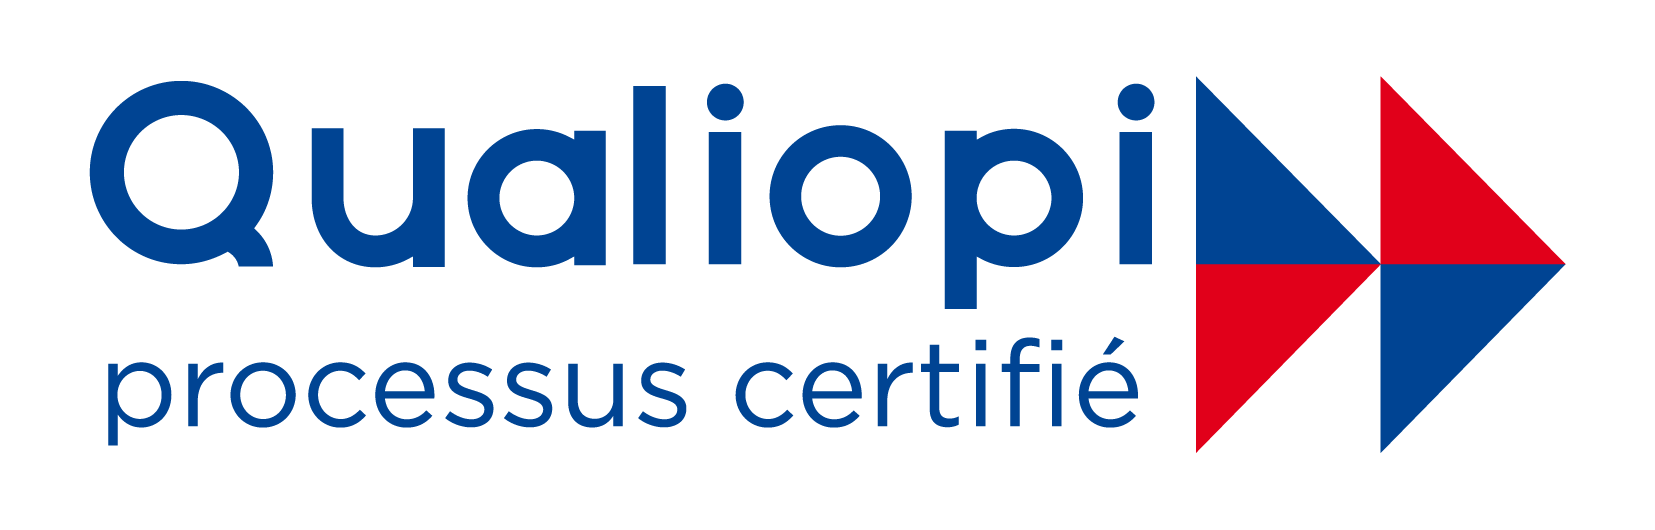 Certification Qualiopi RNQ